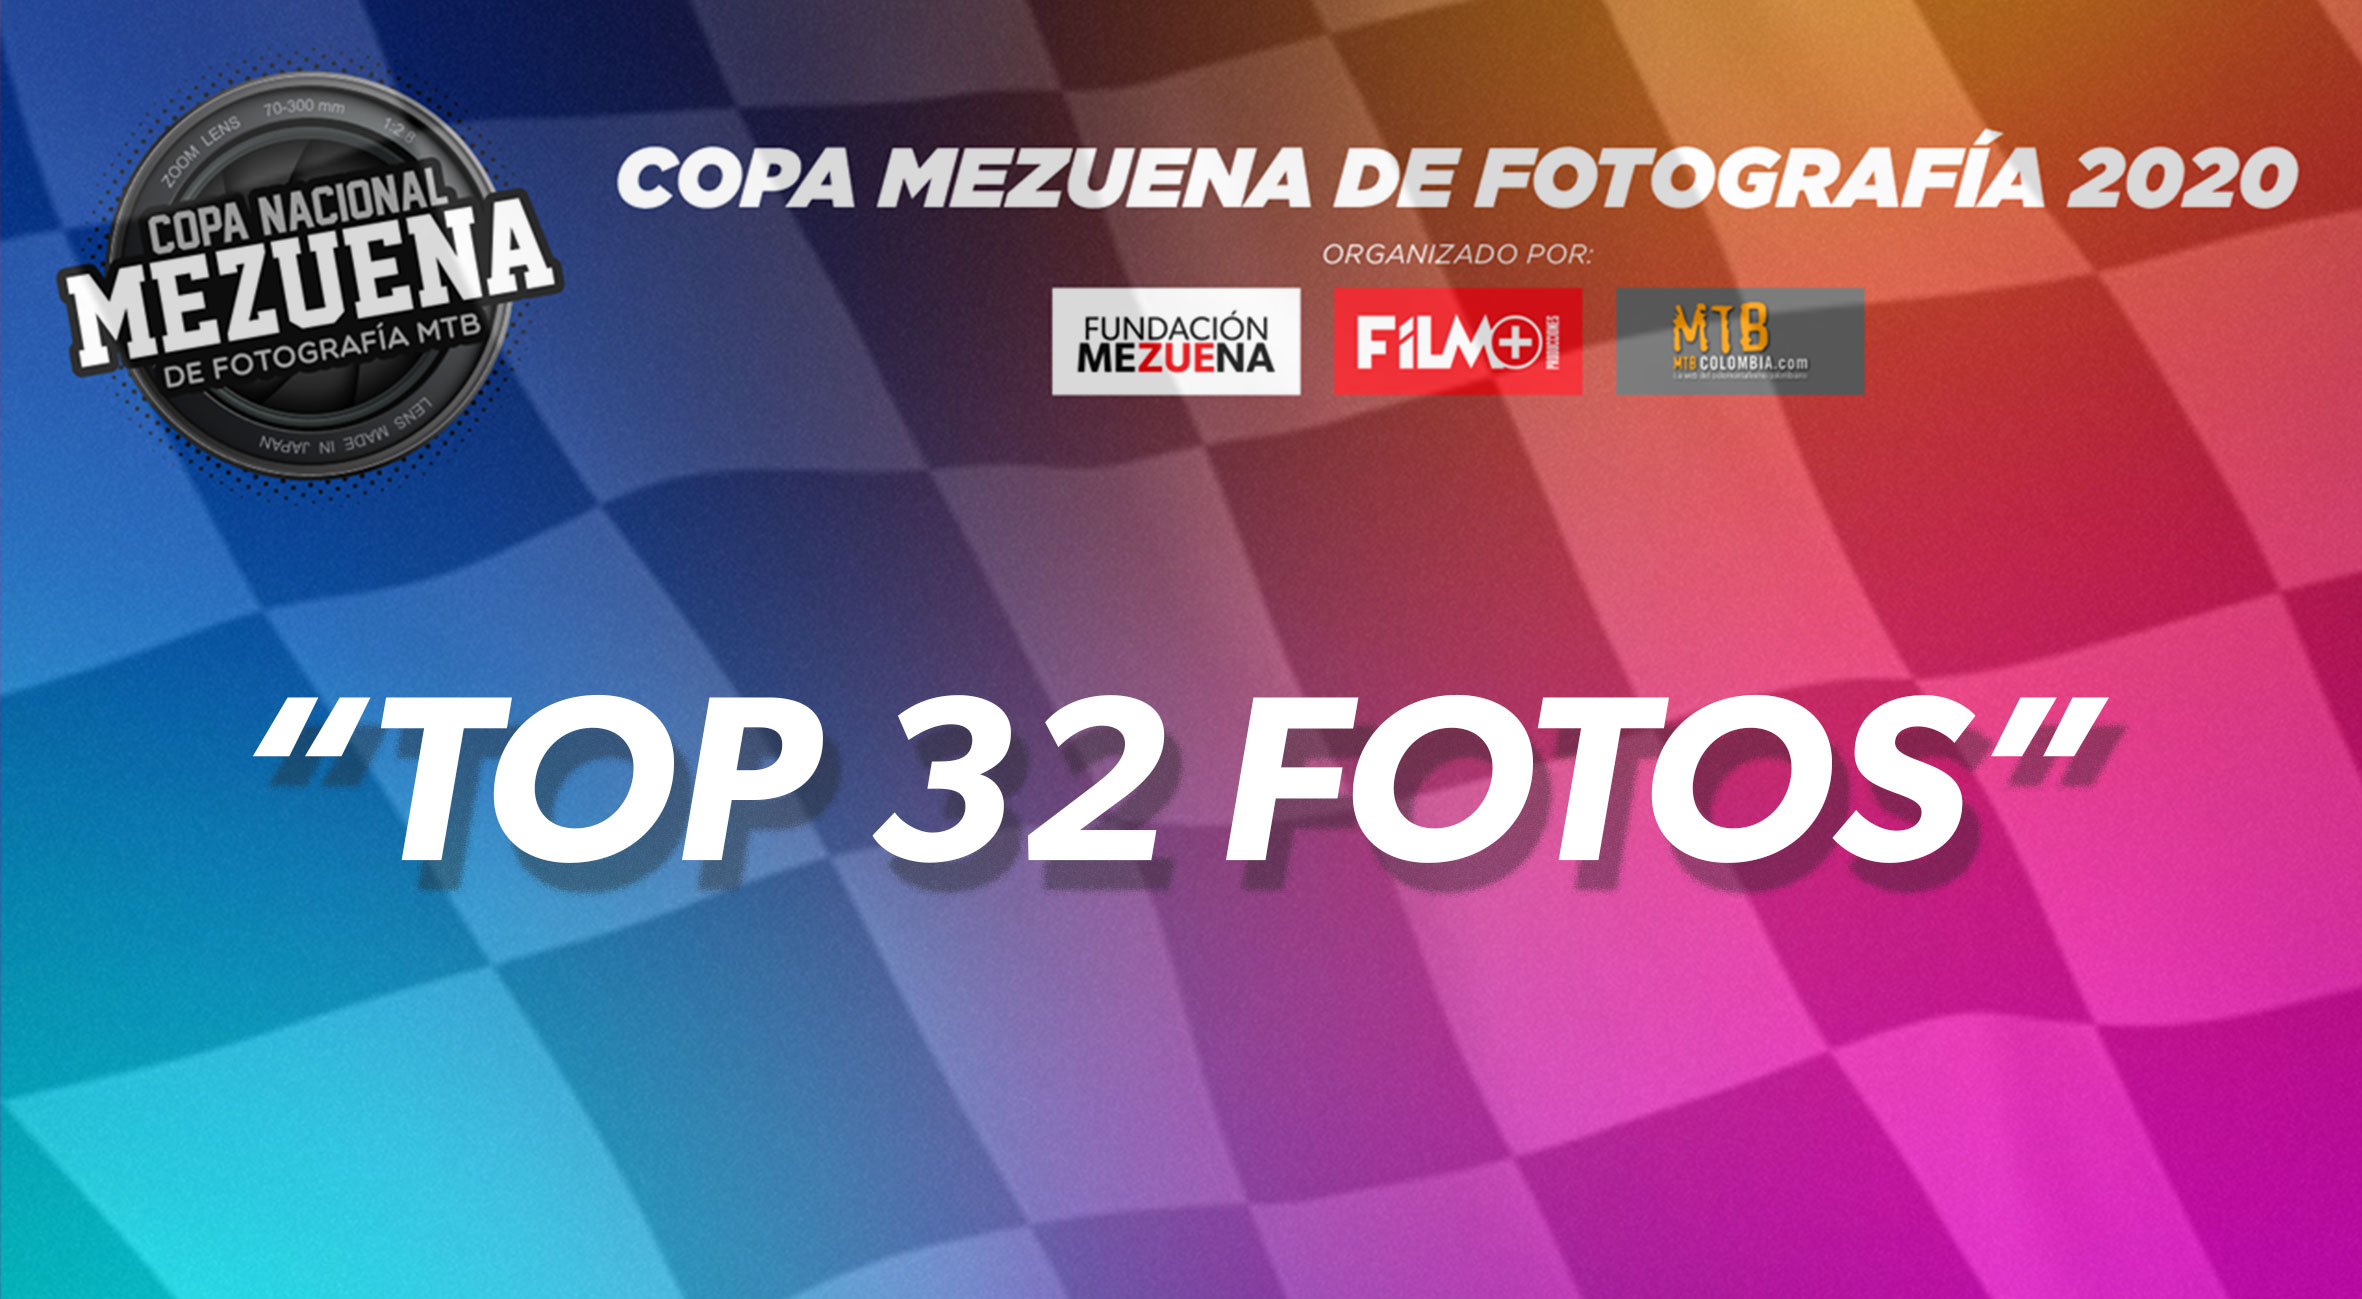 Estas son las 32 fotos que se enfrentarán en la primera ronda de la Copa Nacional Mezuena de fotografía 2020